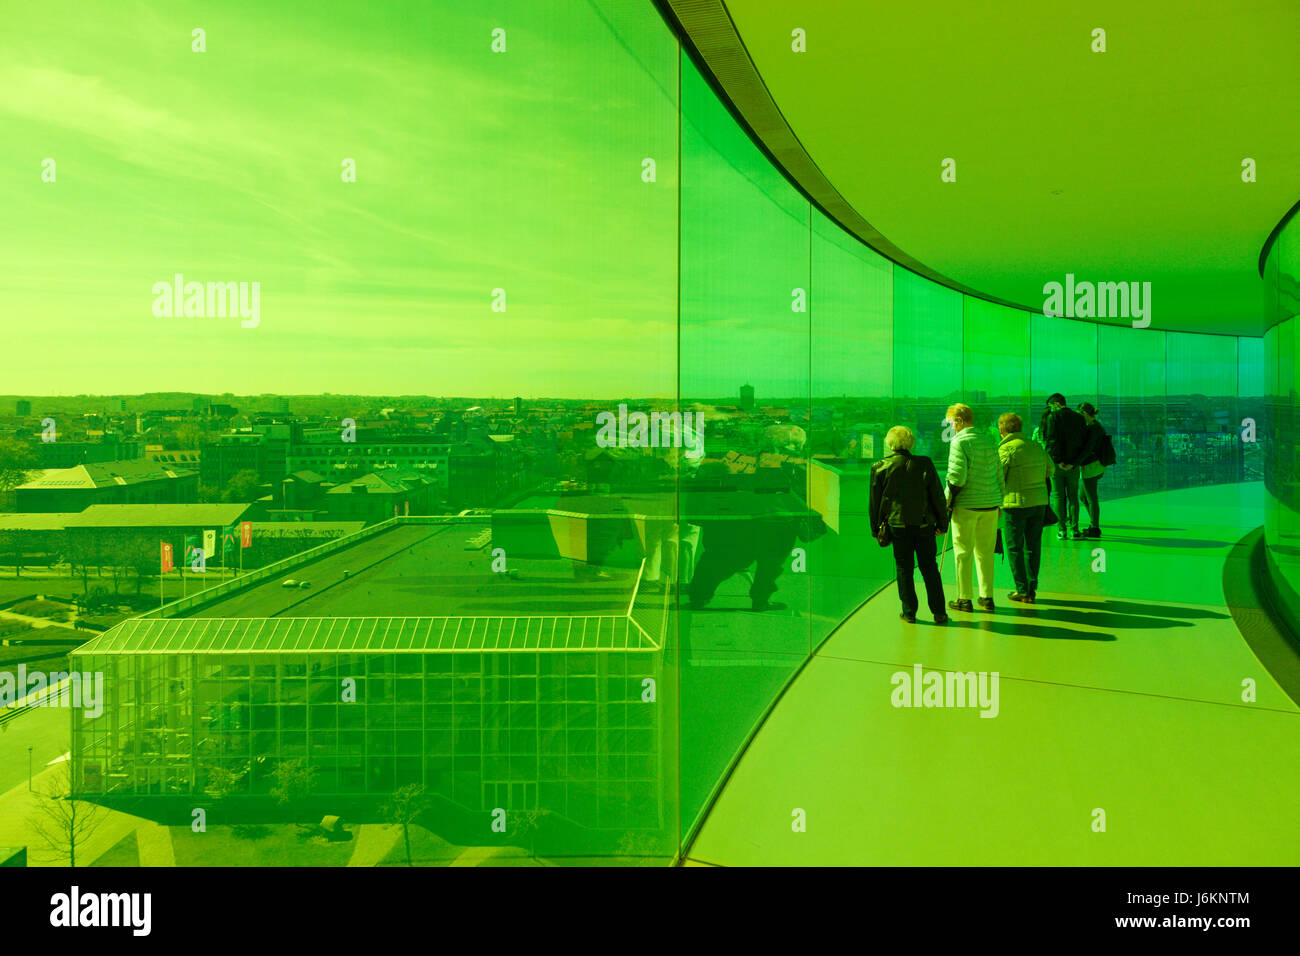 Visitatori godendo la vista attraverso il verde il vetro colorato su Aarhus dall'interno di Olafur Eliasson installazione "Il panorama arcobaleno" sulla sommità del Aarh Foto Stock